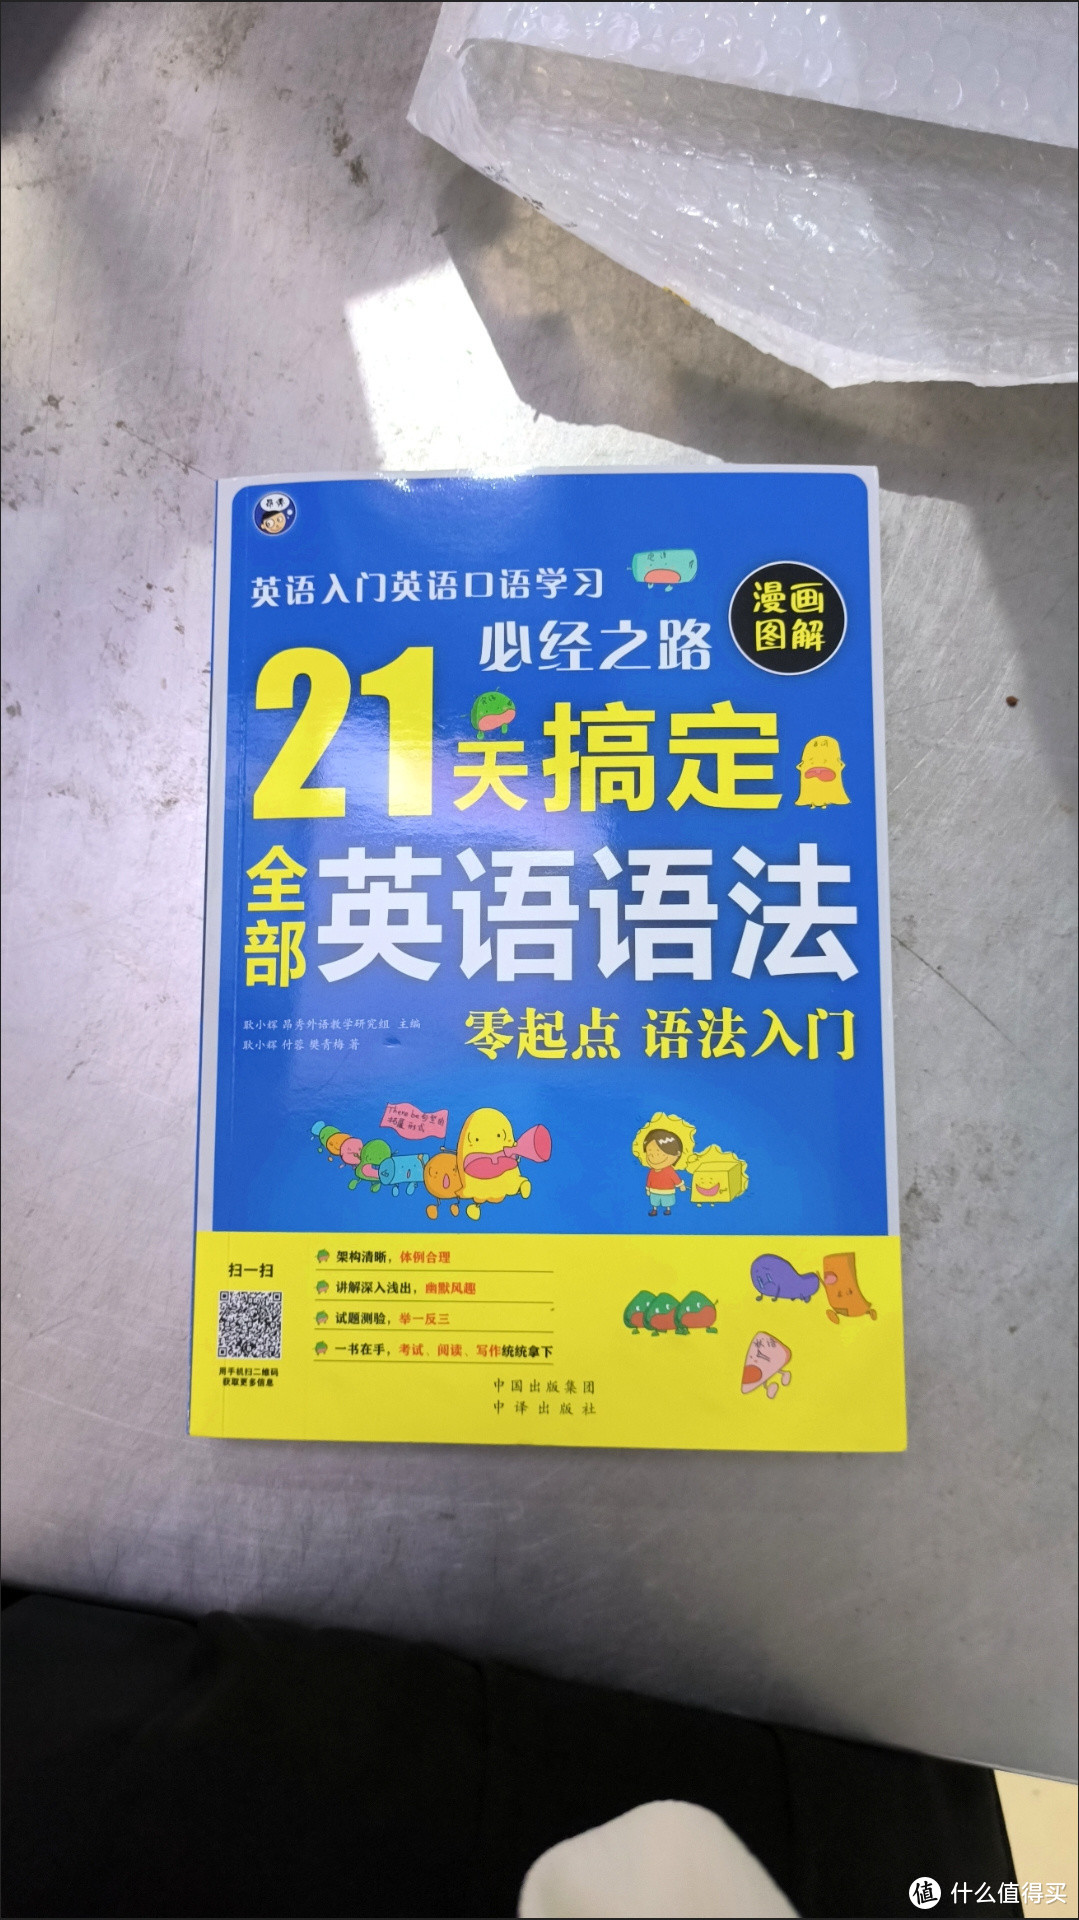 开学季，想学好英语的同学一定要记得带上这本“英语语法学习书”